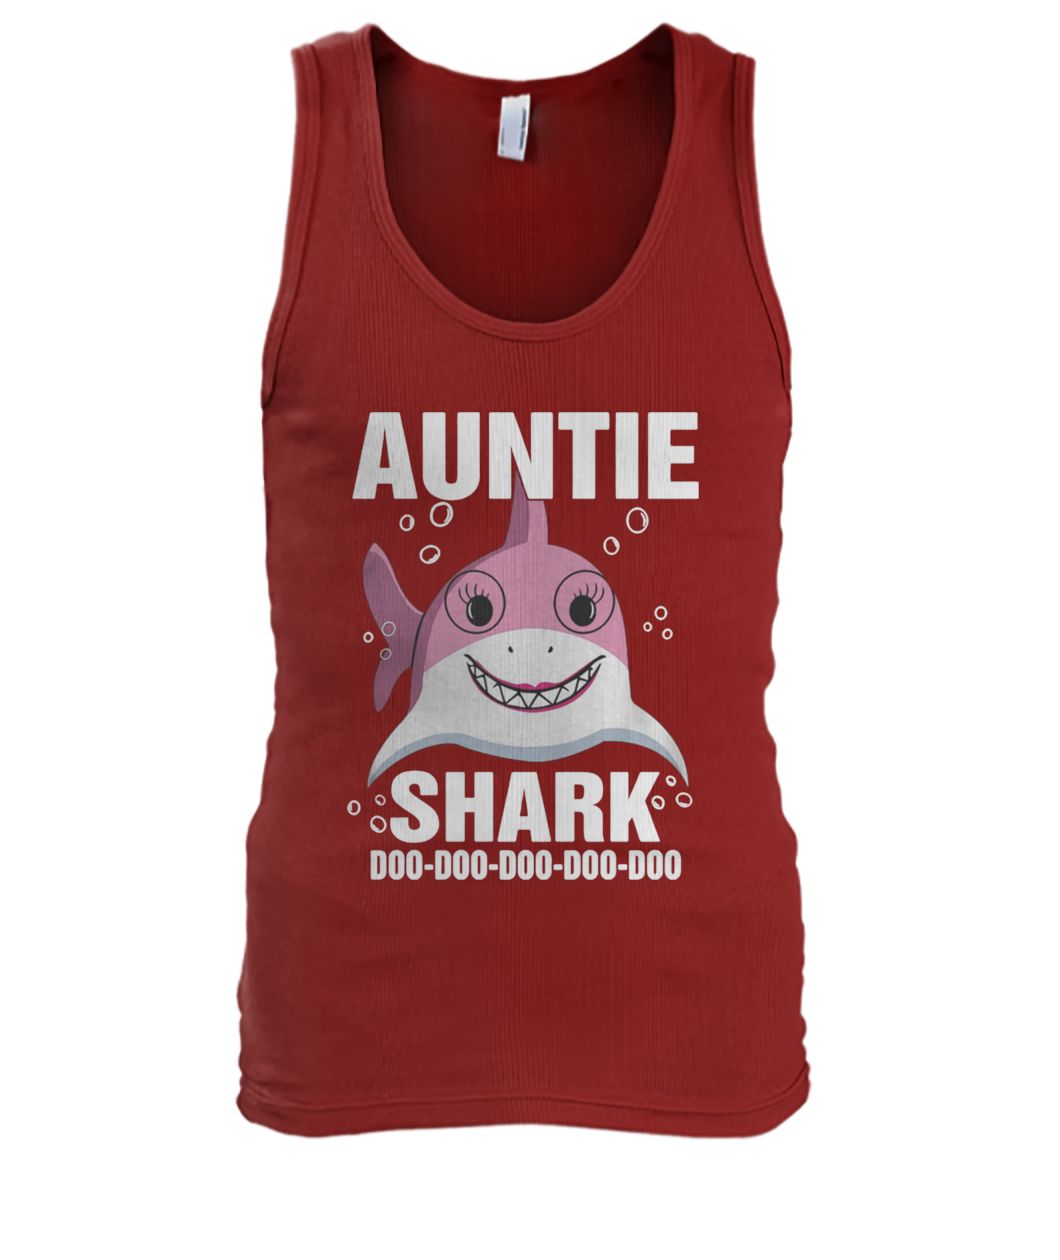 Auntie shark doo doo doo doo doo men's tank top